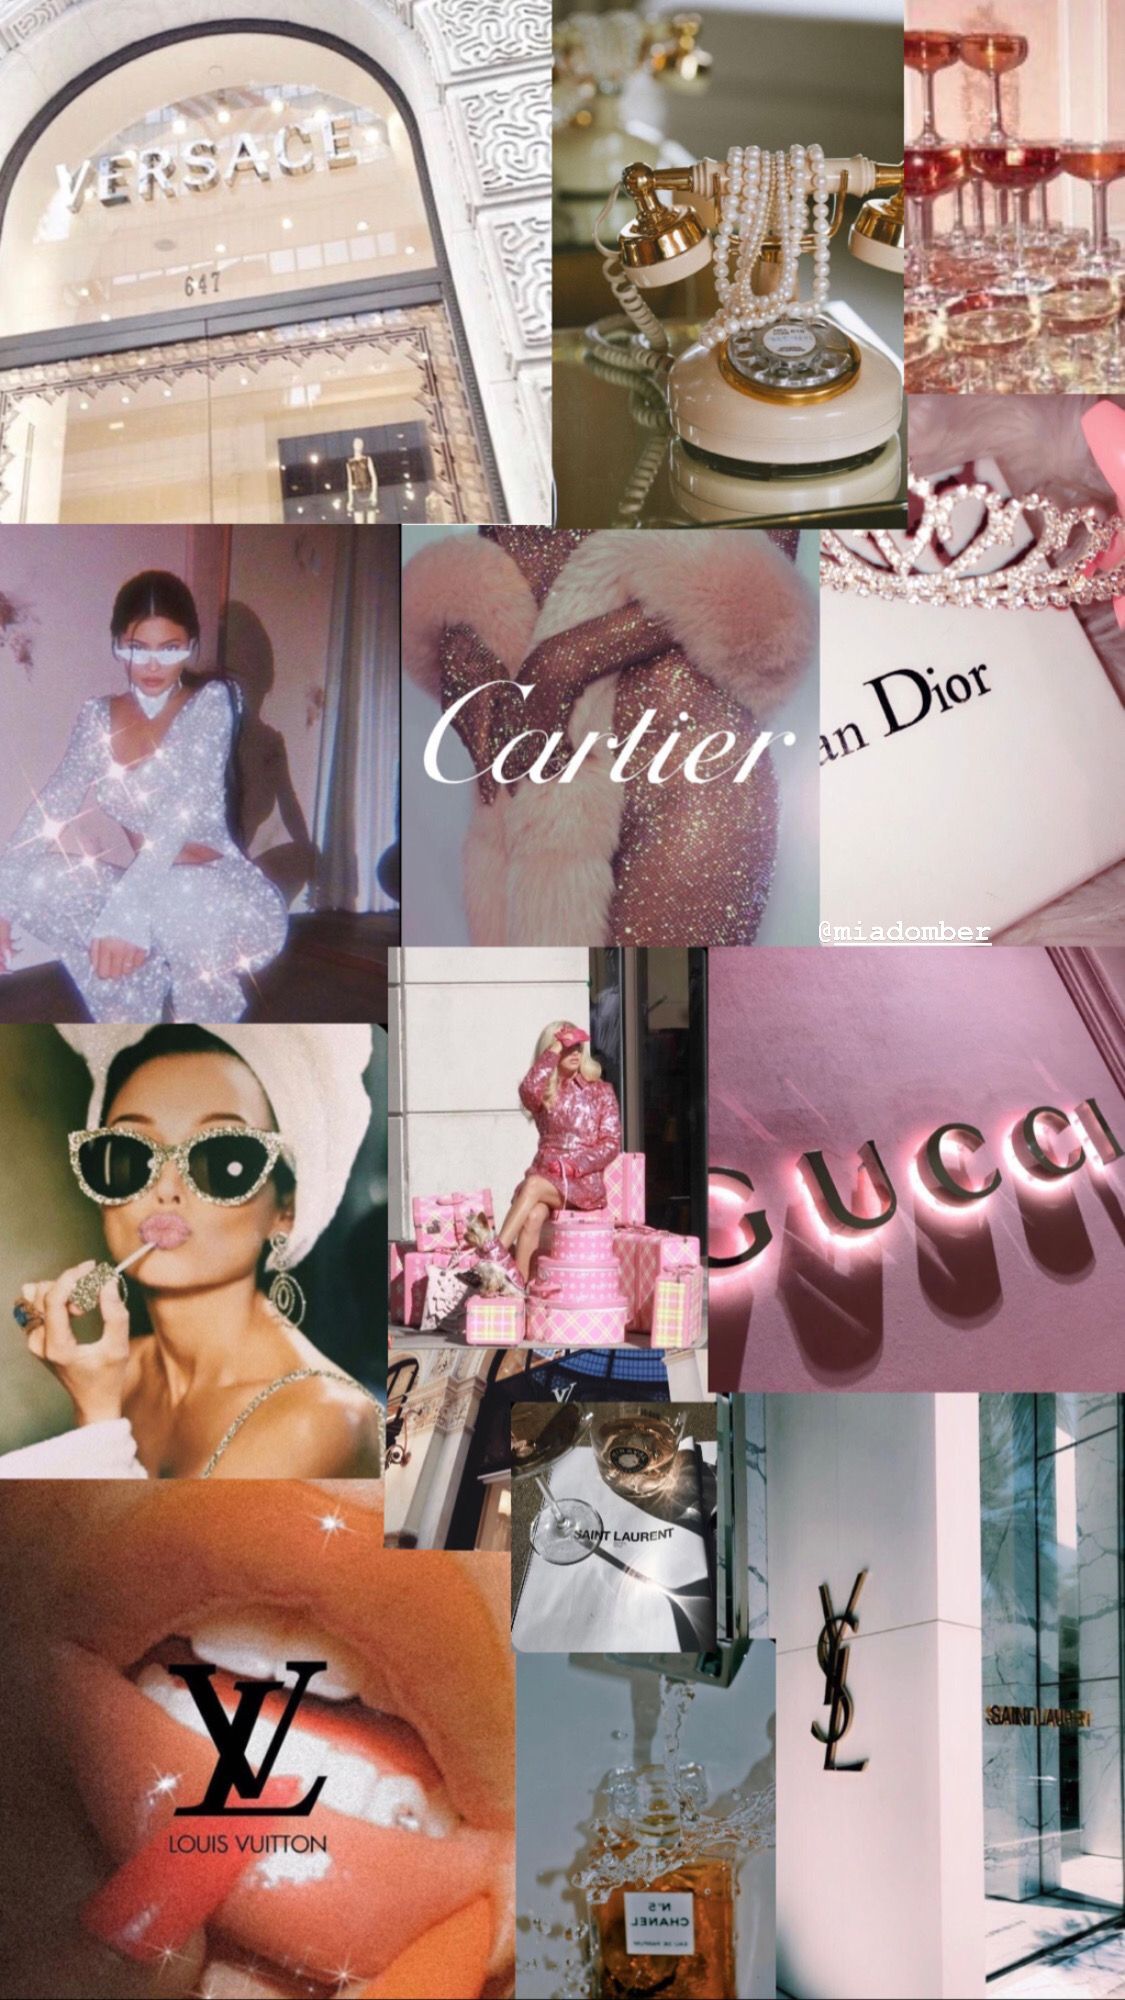 Wallpaper Gucci /Vogue / Dior. Vogue wallpaper, Aesthetic desktop wallpaper, Aesthetic iphone wallpaper